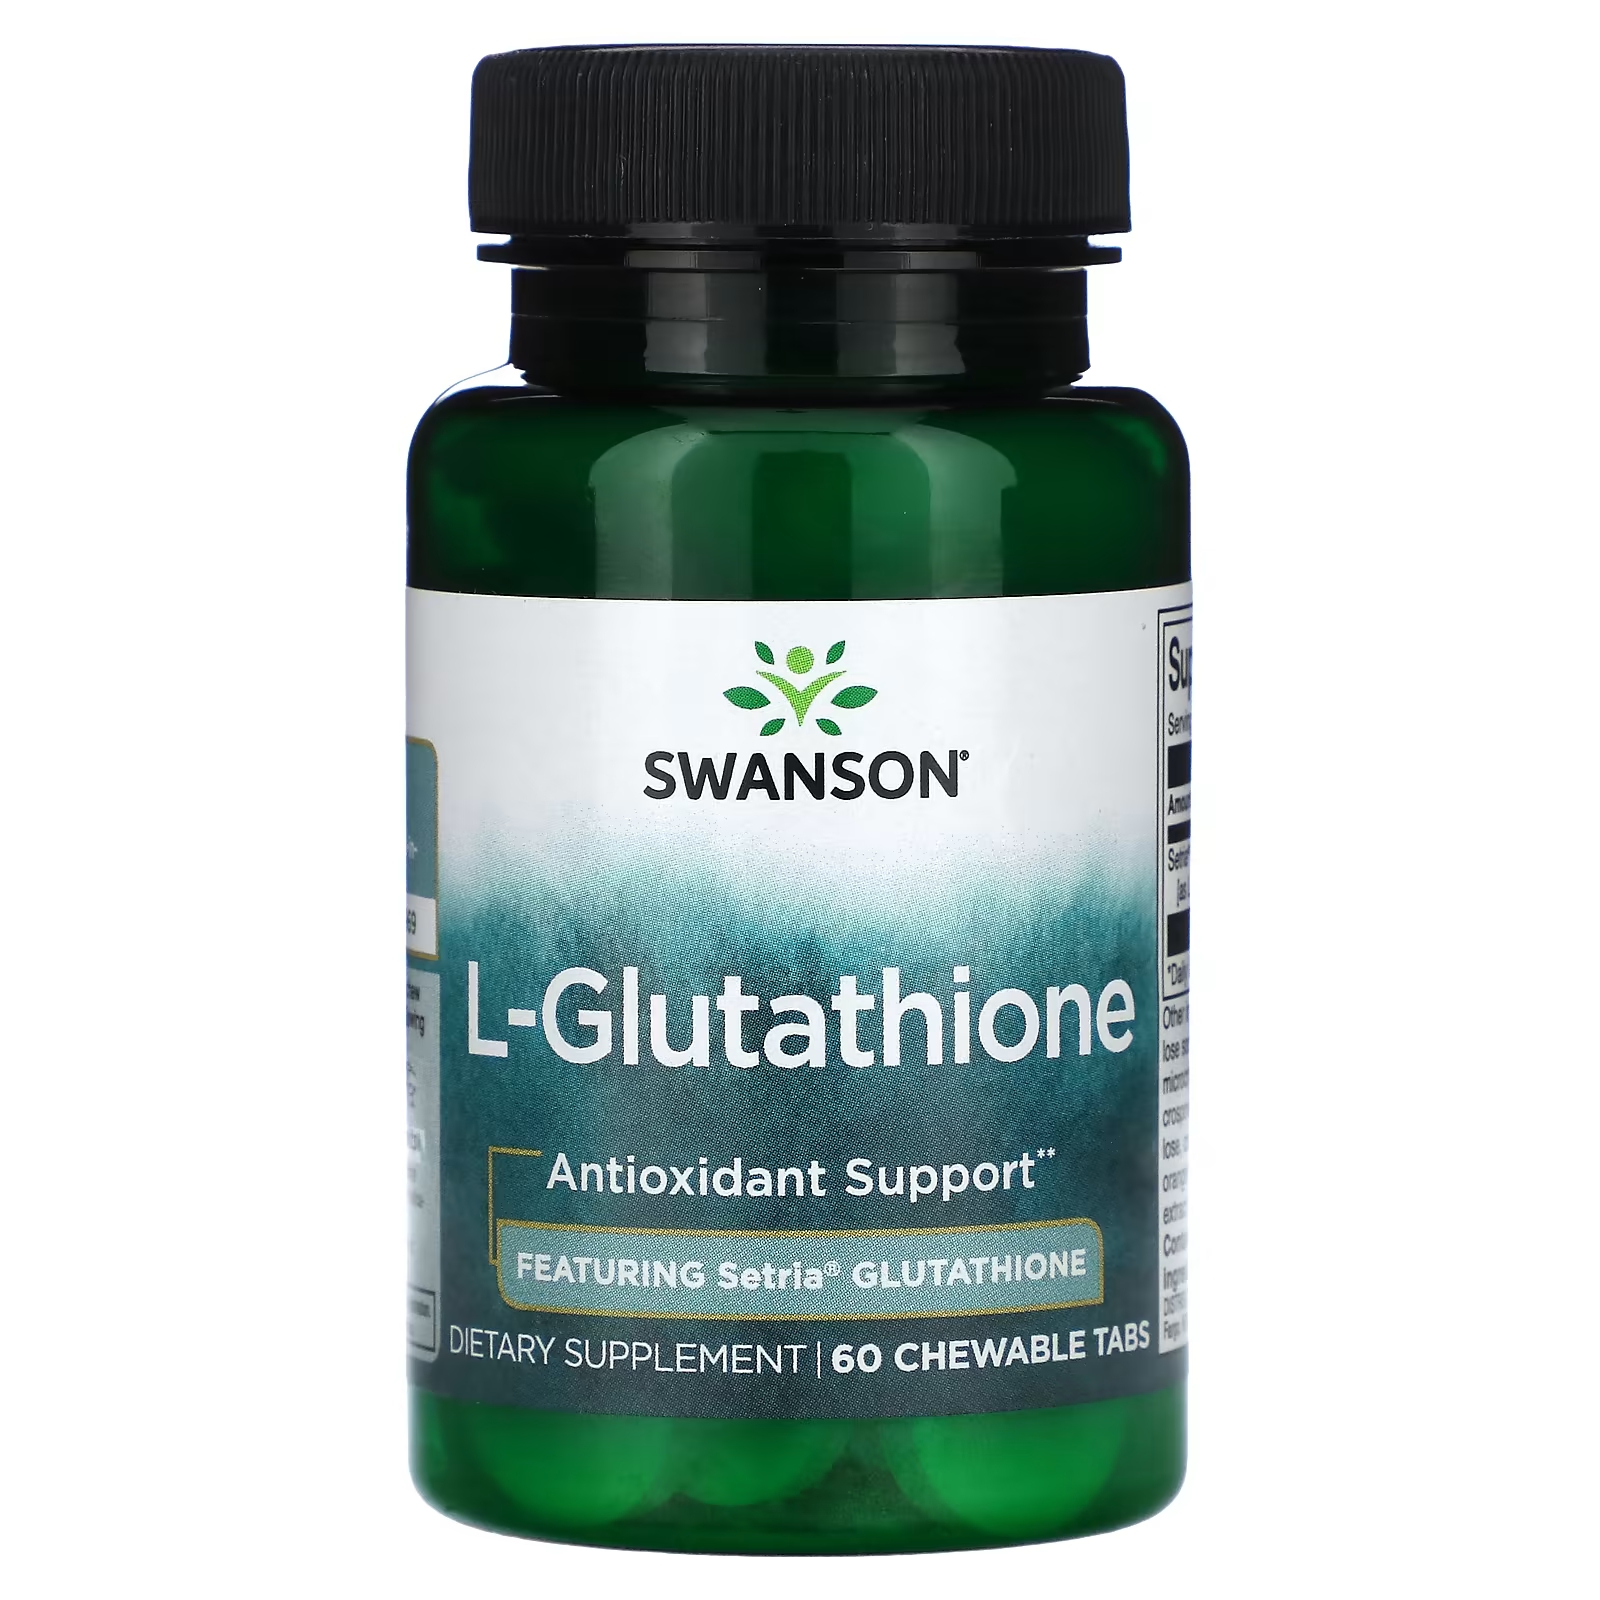 glutathione powder glutathione whitening powder l glutathione supplement gsh L-глутатион Swanson, 60 жевательных таблеток